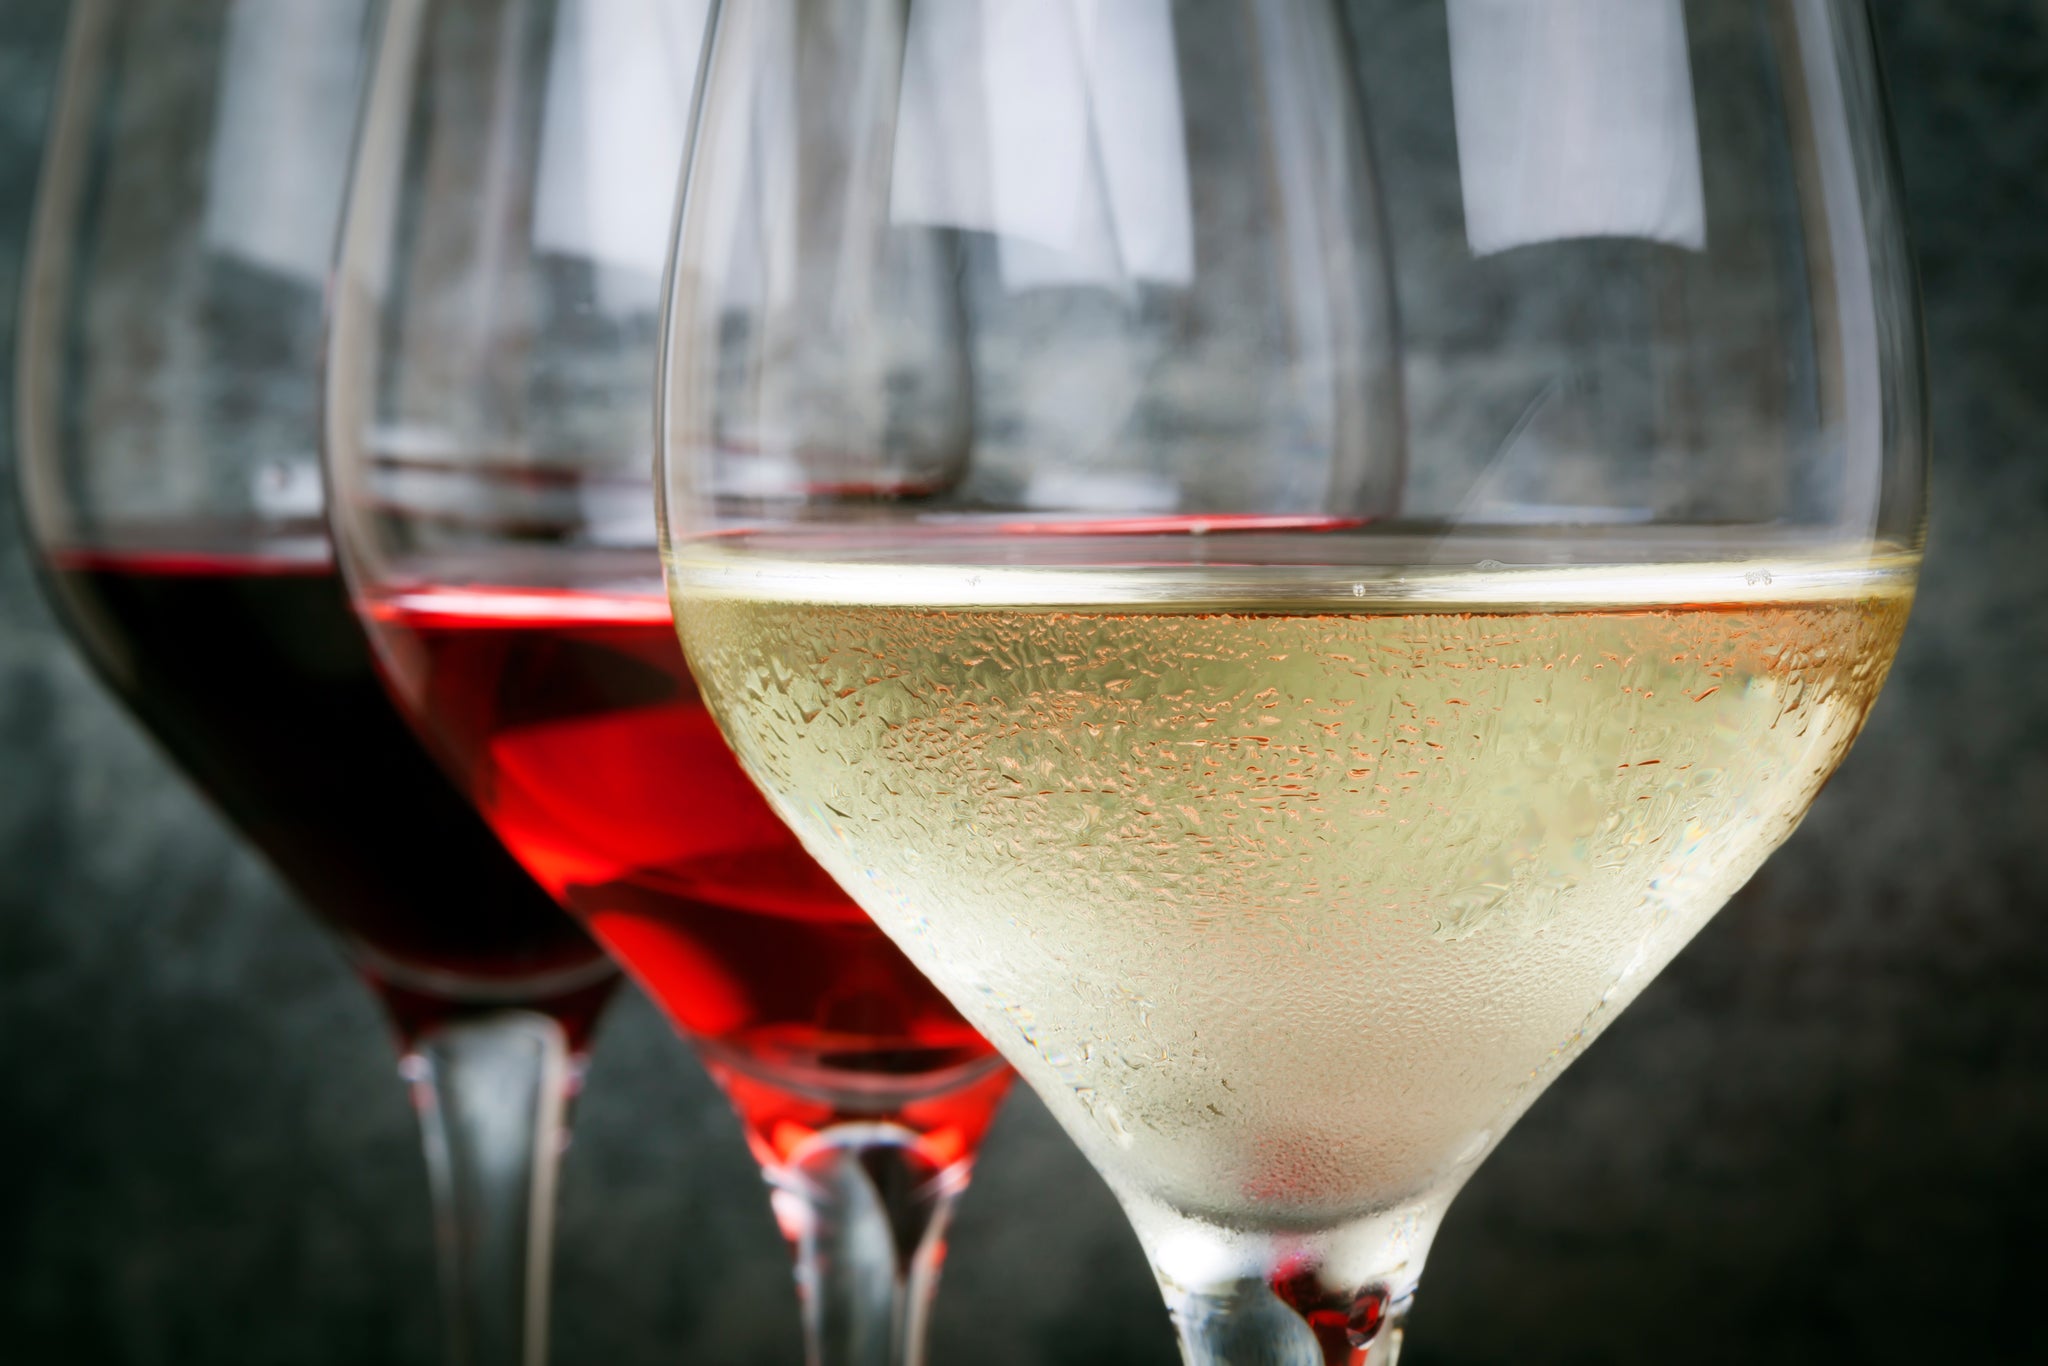 Koele witte wijn, rosé wijn en rode wijn